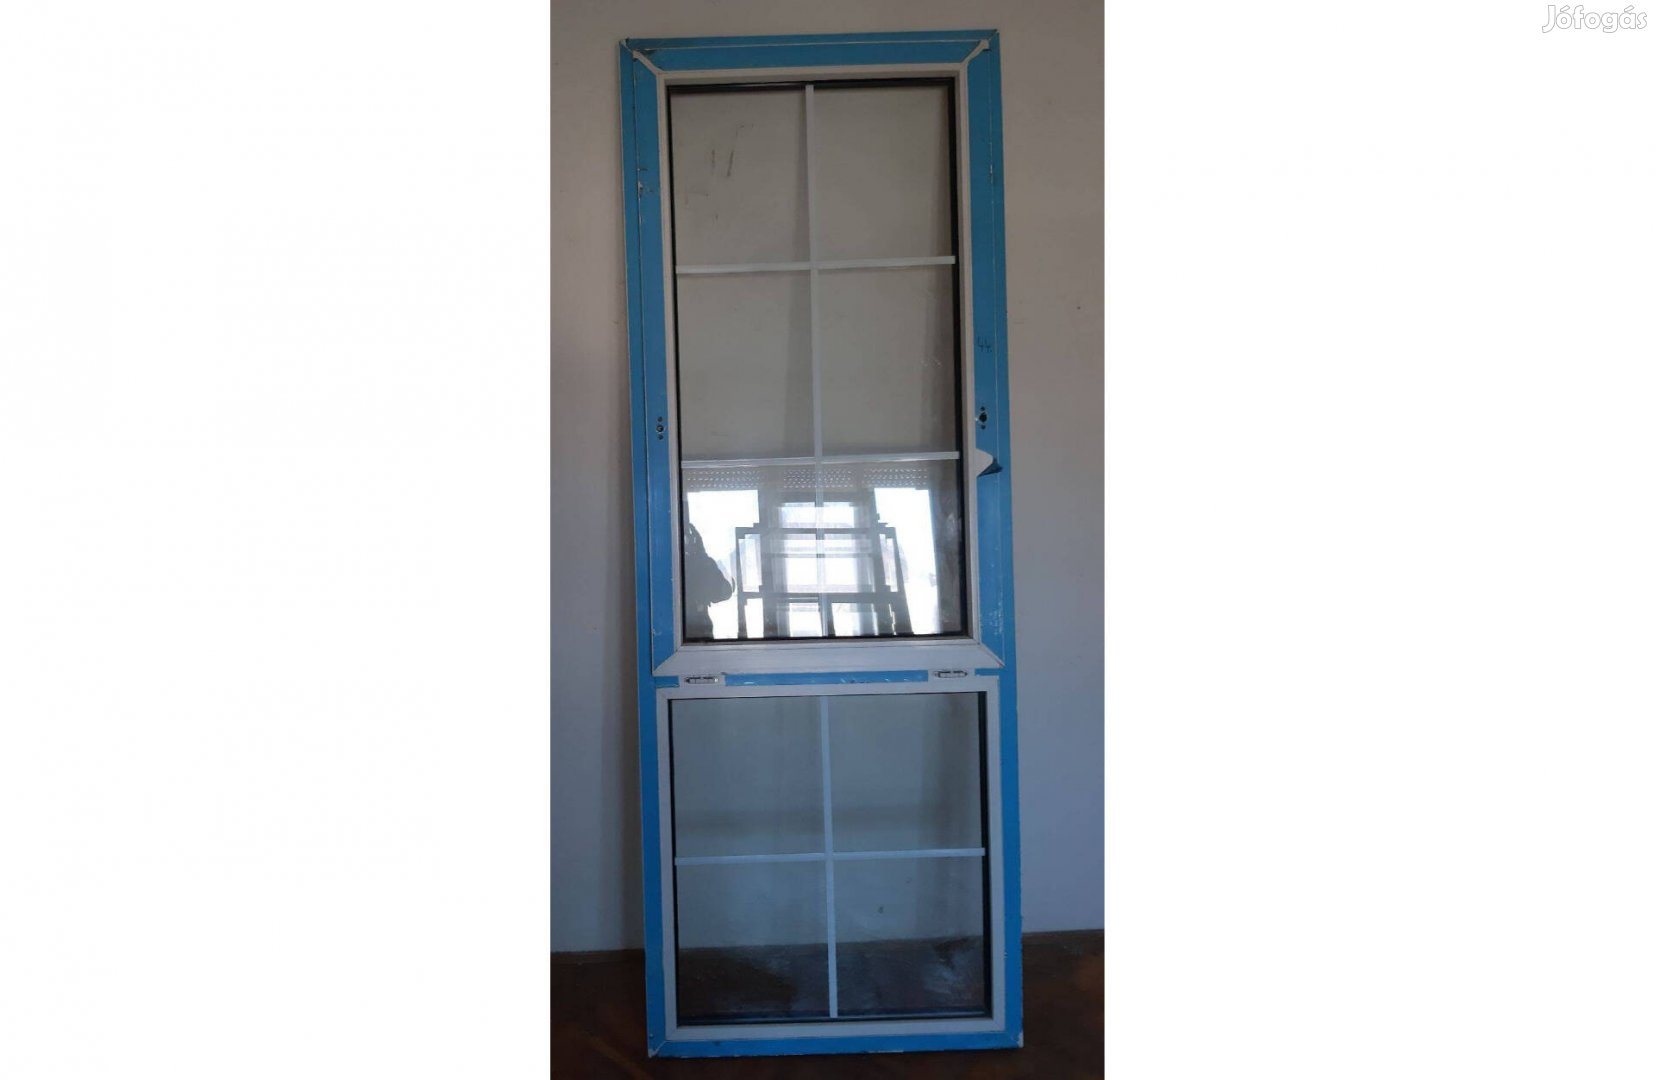 Műanyag ablak, műanyag nyílászáró, erkély/terasz ablak 89x240 cm